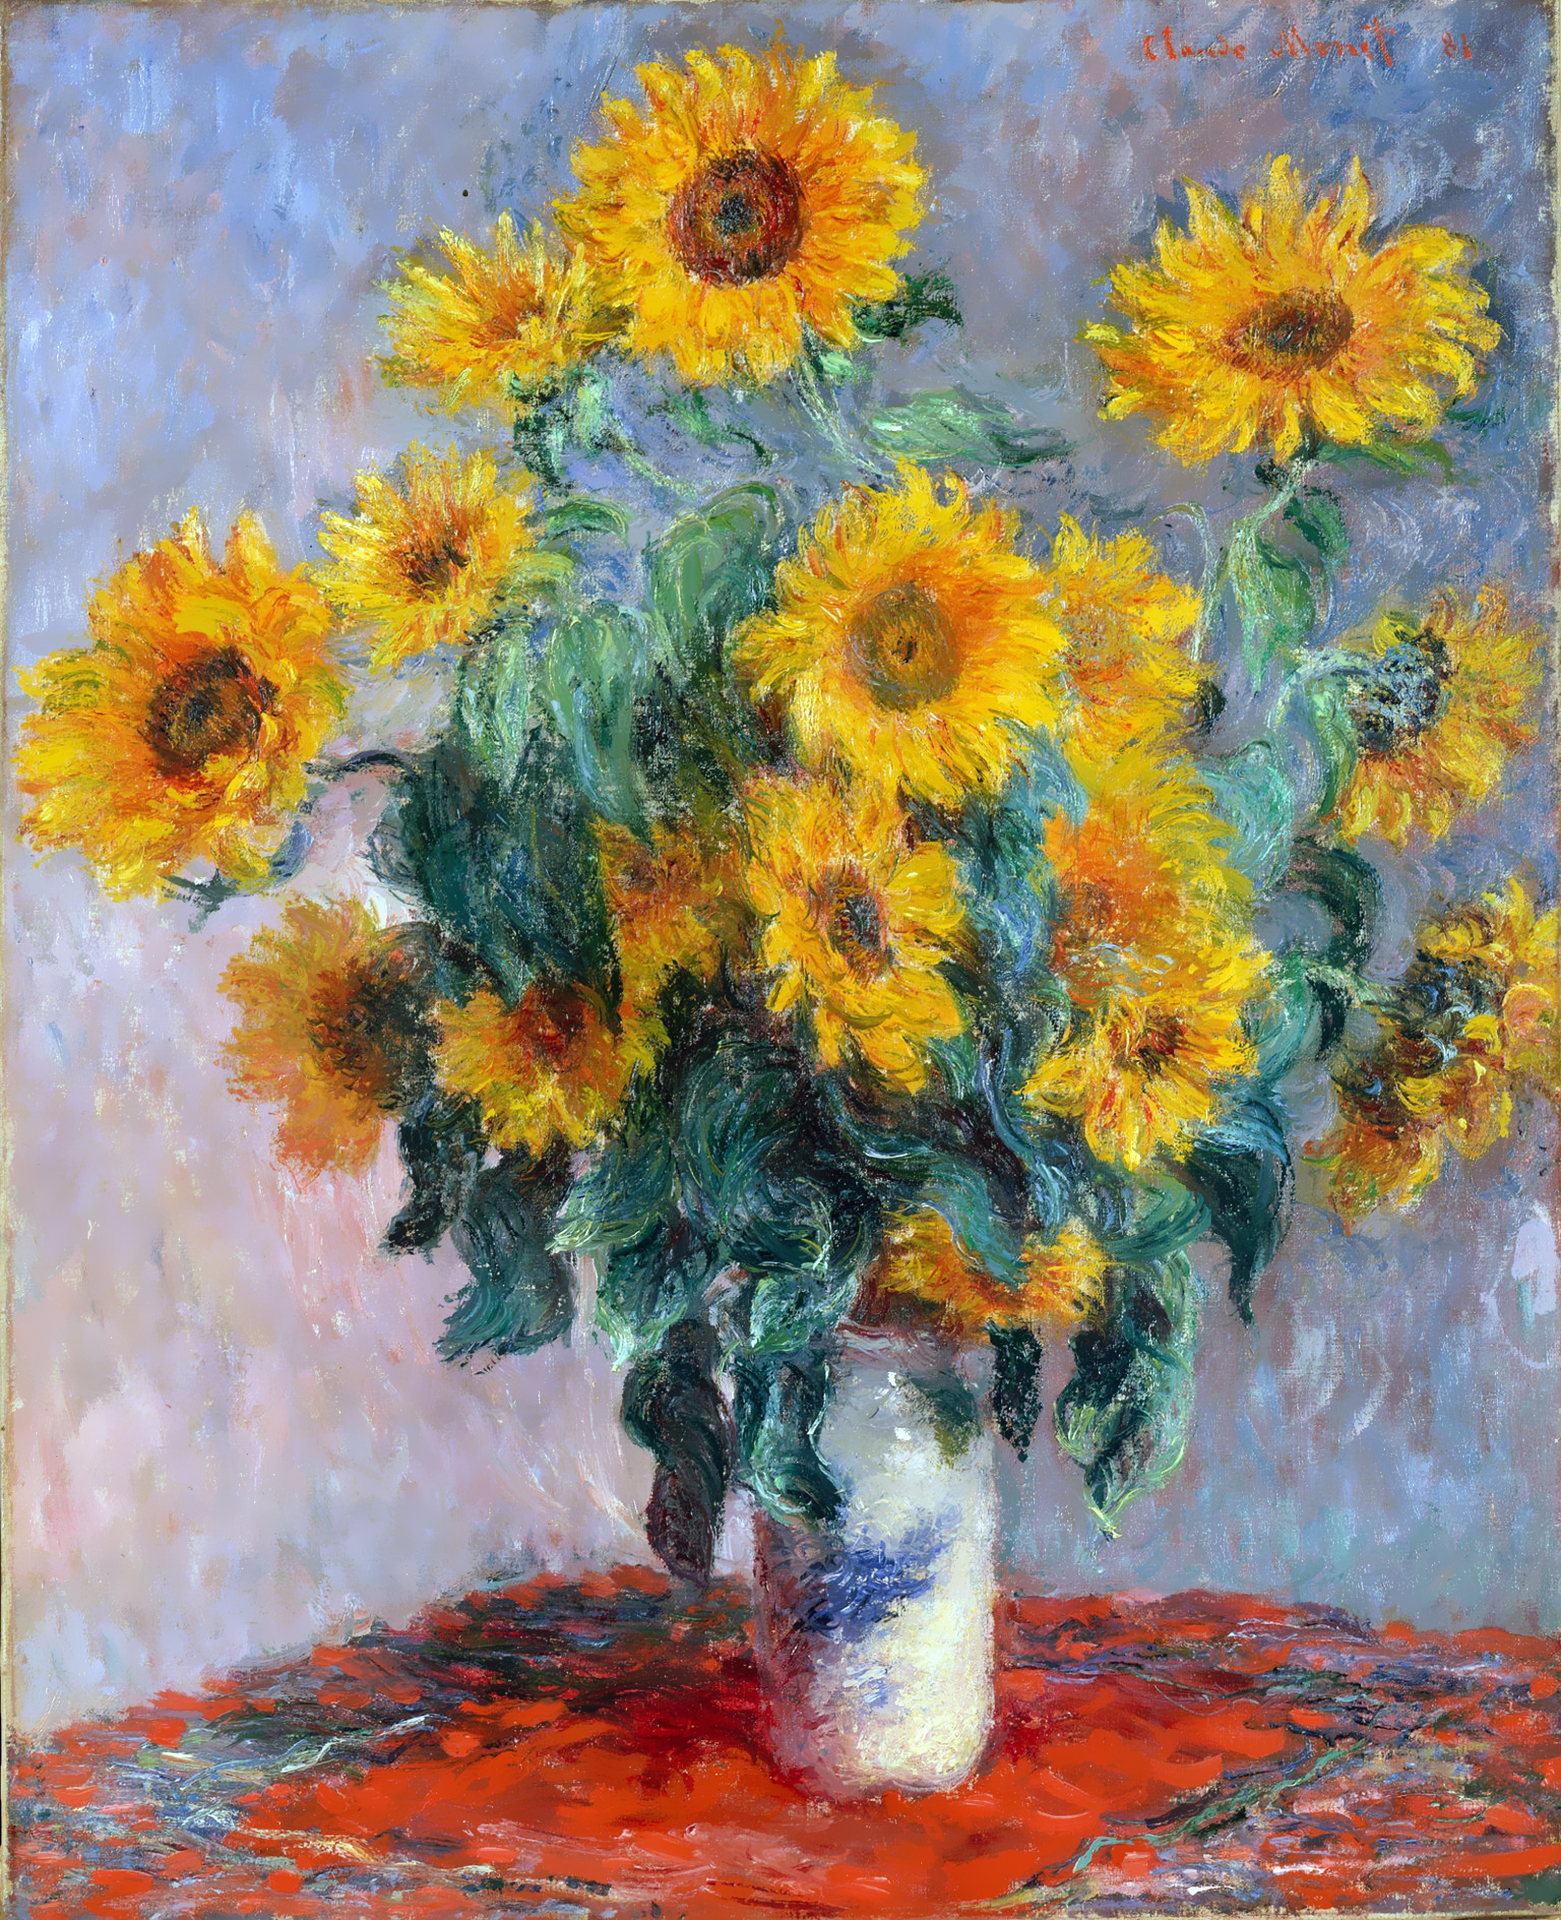 ひまわりの花束 Bouquet Of Sunflowers クロード モネ 壁紙画像 ミヤノーヴァ